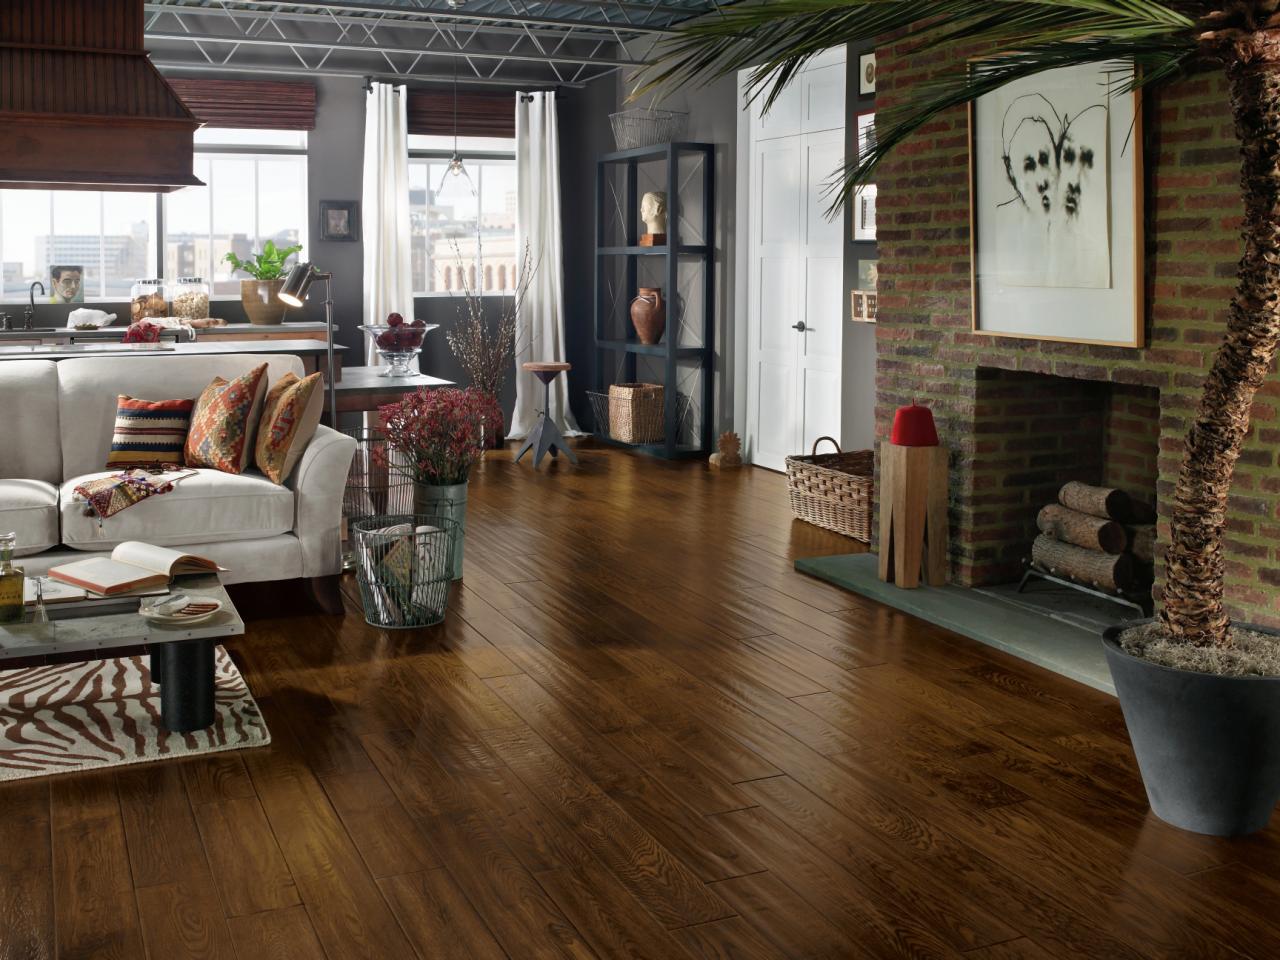 Top Living Room Flooring Options, Wooden Floor Living Room Designs